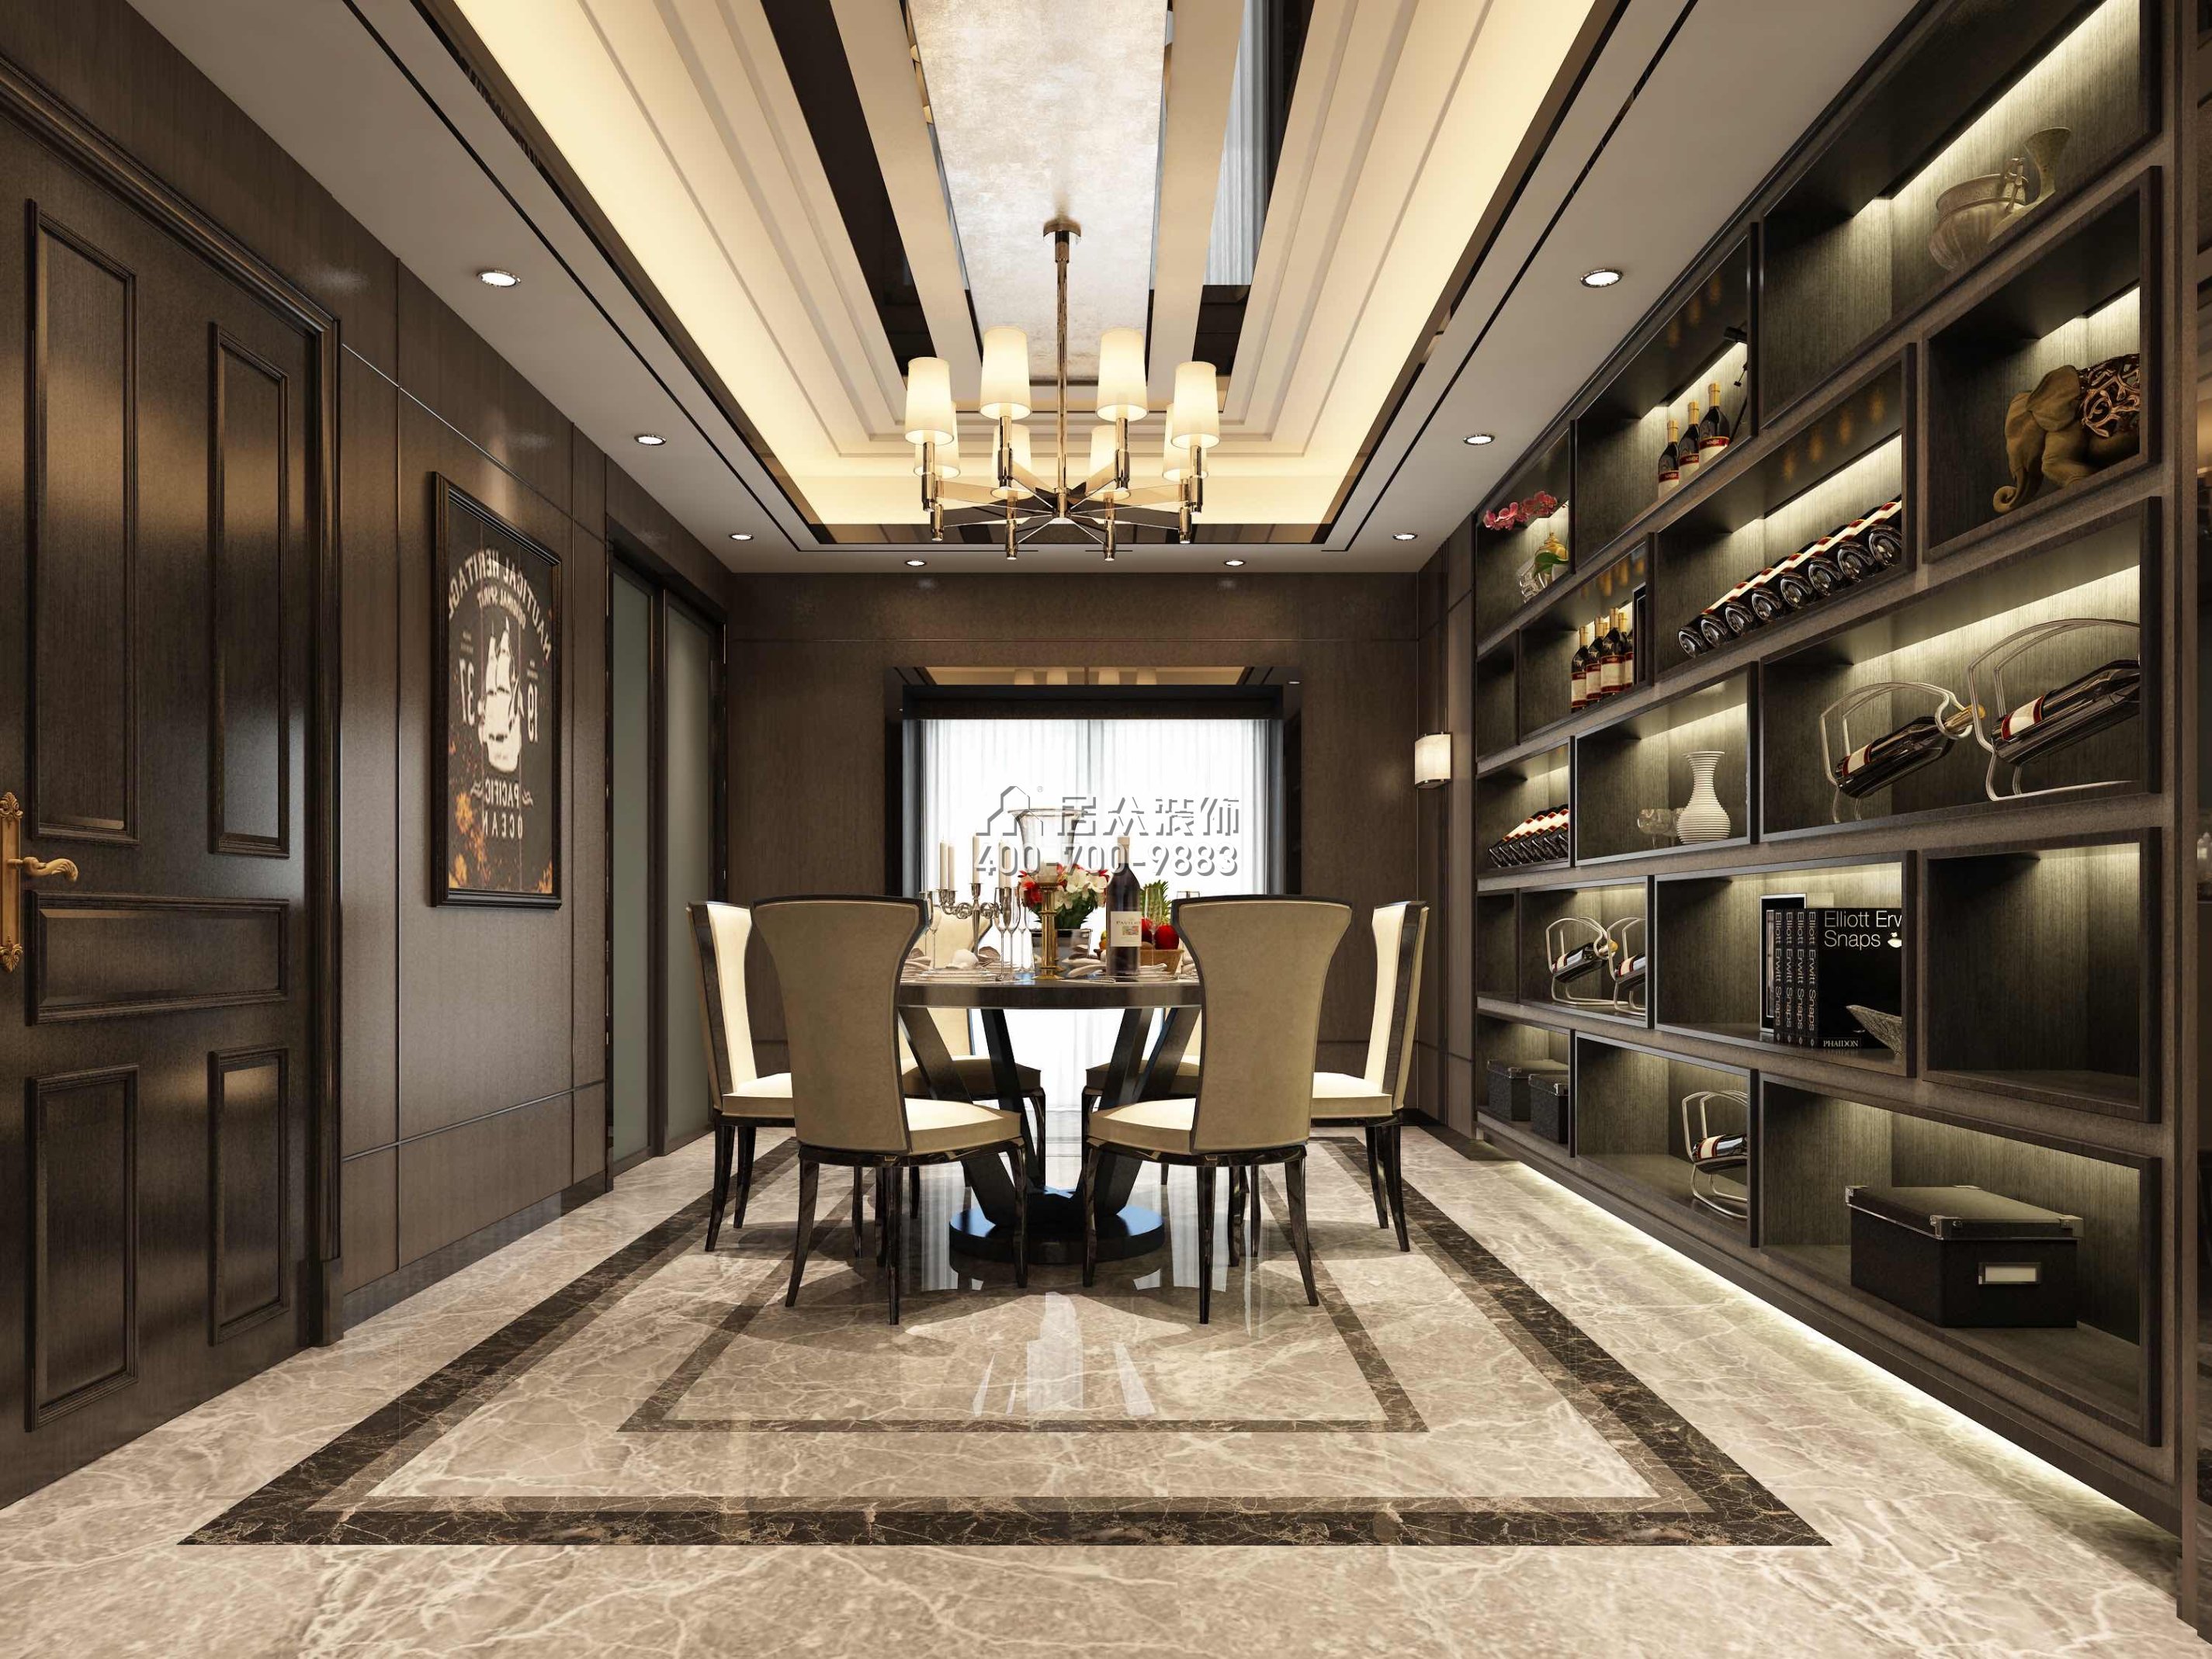 山语清晖218平方米新古典风格平层户型餐厅装修效果图